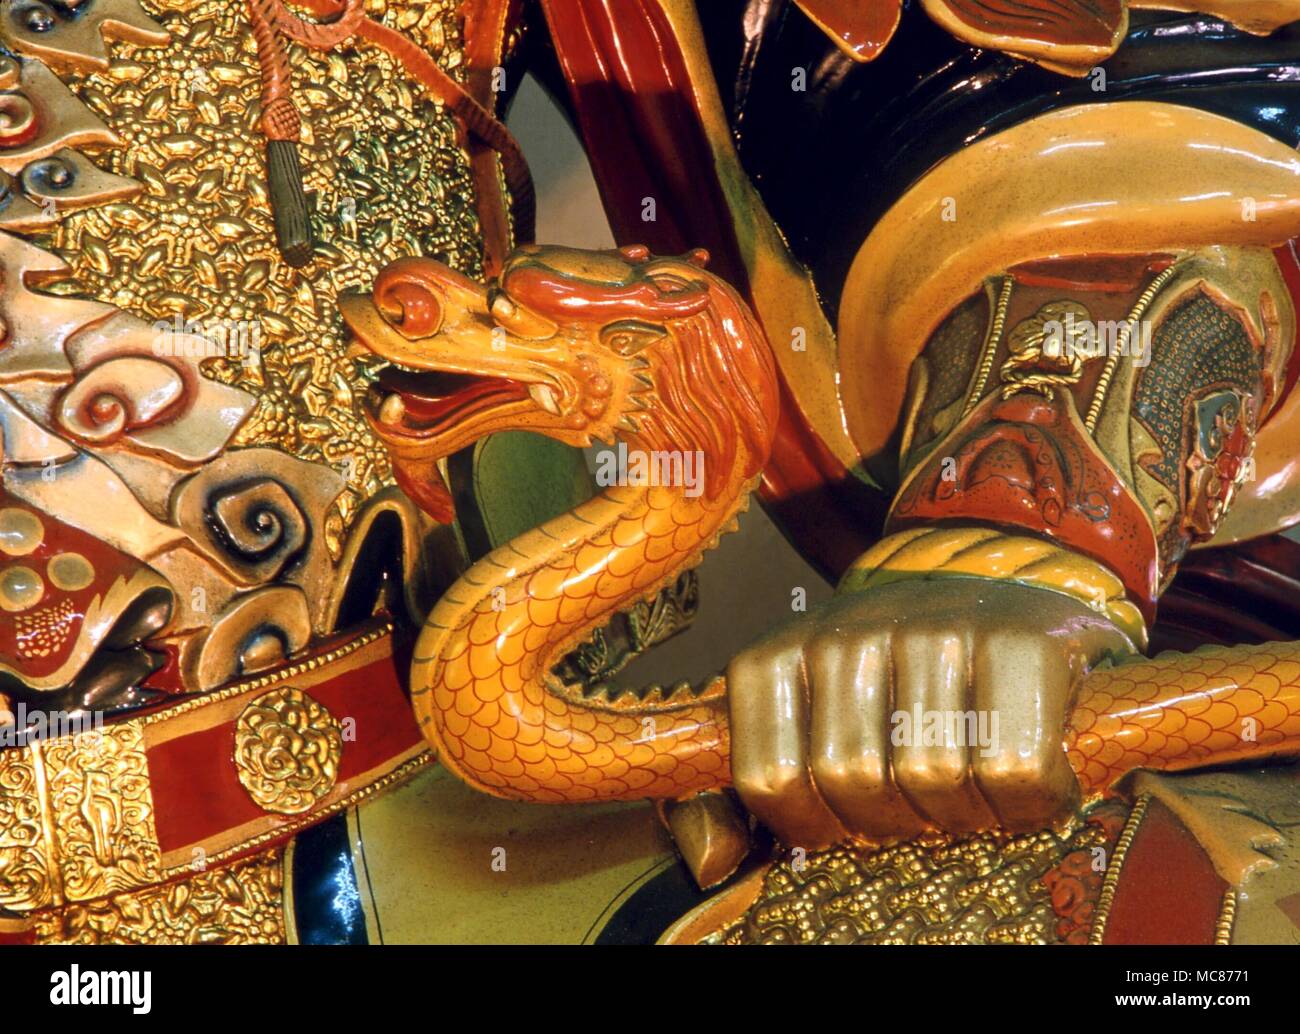 Die Schlange ist eines der beiden Attribute des Großen Königs des Südens (Herr des Wachstums') in der buddhistischen Mythologie. In der anderen Hand hält er die heilige Perle. Po Lin Kloster, Lantau Stockfoto